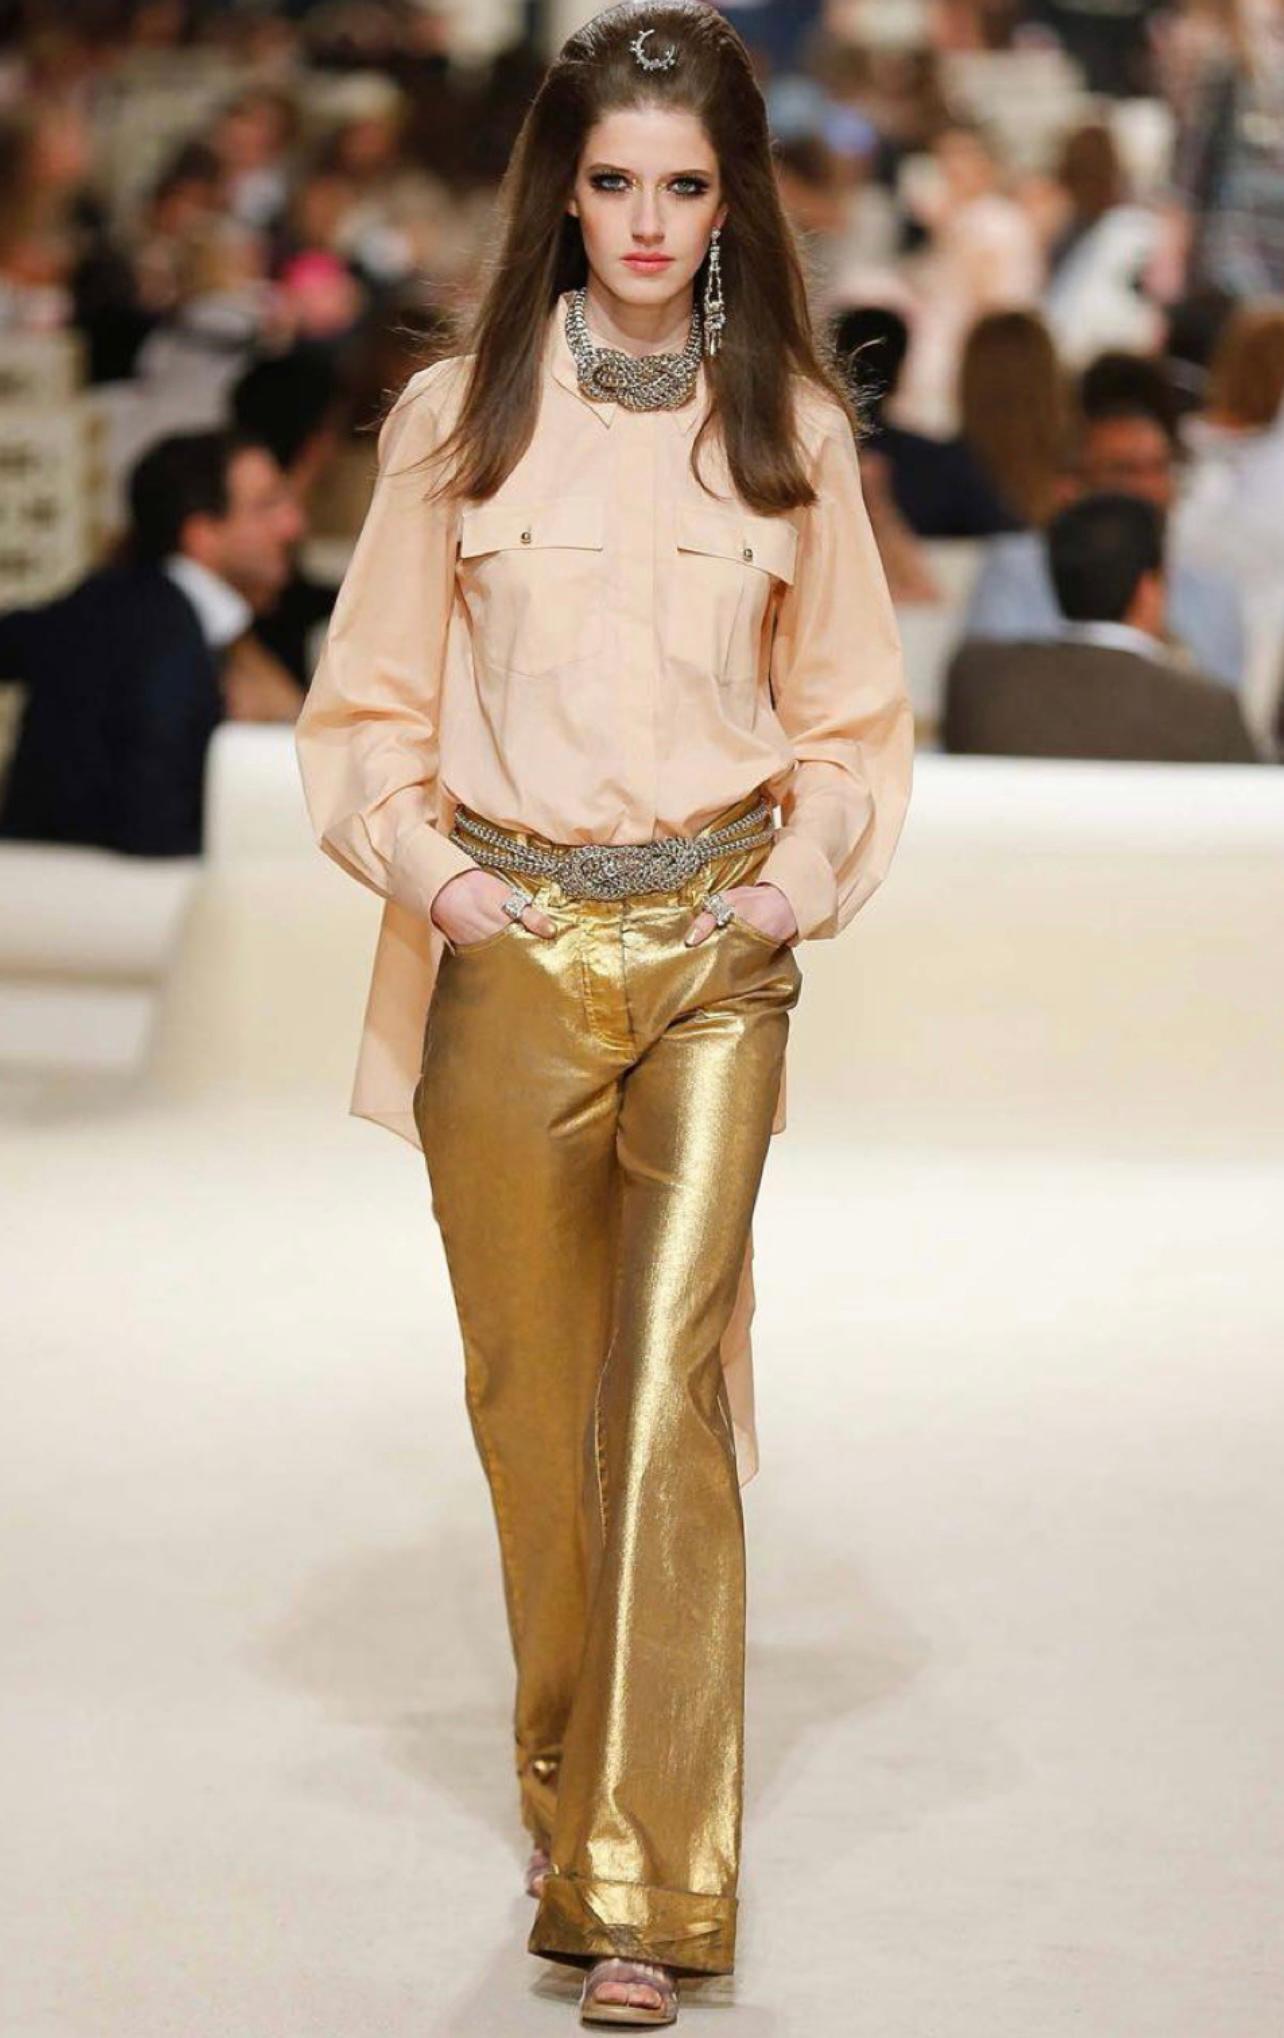 Chanel Runway goldgewaschene Jeans aus Paris / DUBAI 2015 Cruise Collection.
- CC-Logo-Tasten in der Mitte
Größenbezeichnung 44 FR. Nie getragen